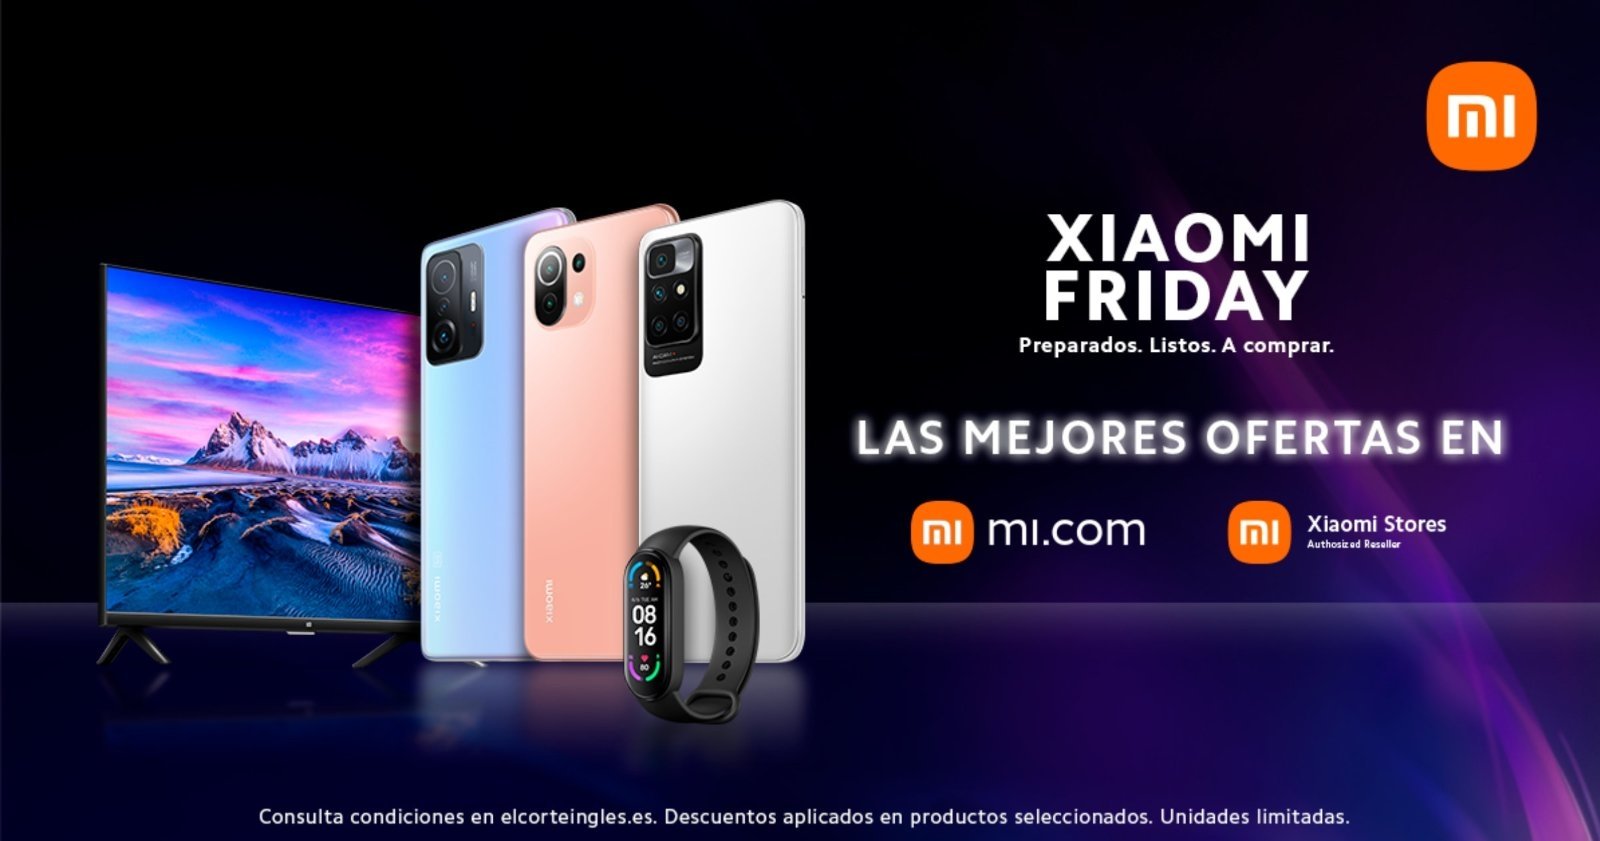 Las mejores ofertas de Xiaomi España para el Black Friday 2021: móviles, accesorios, Smart Home y más